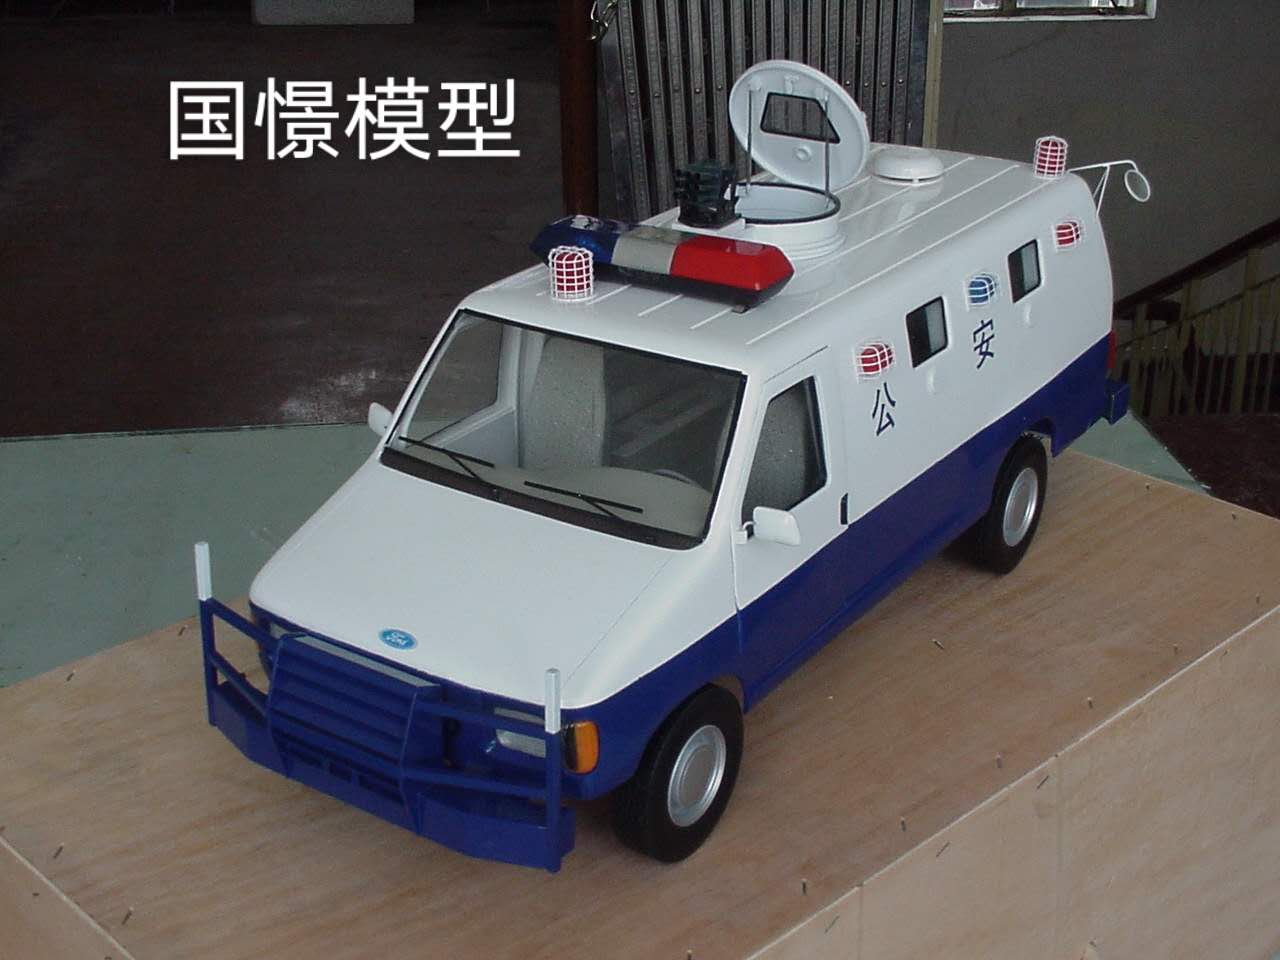 鹿寨县车辆模型